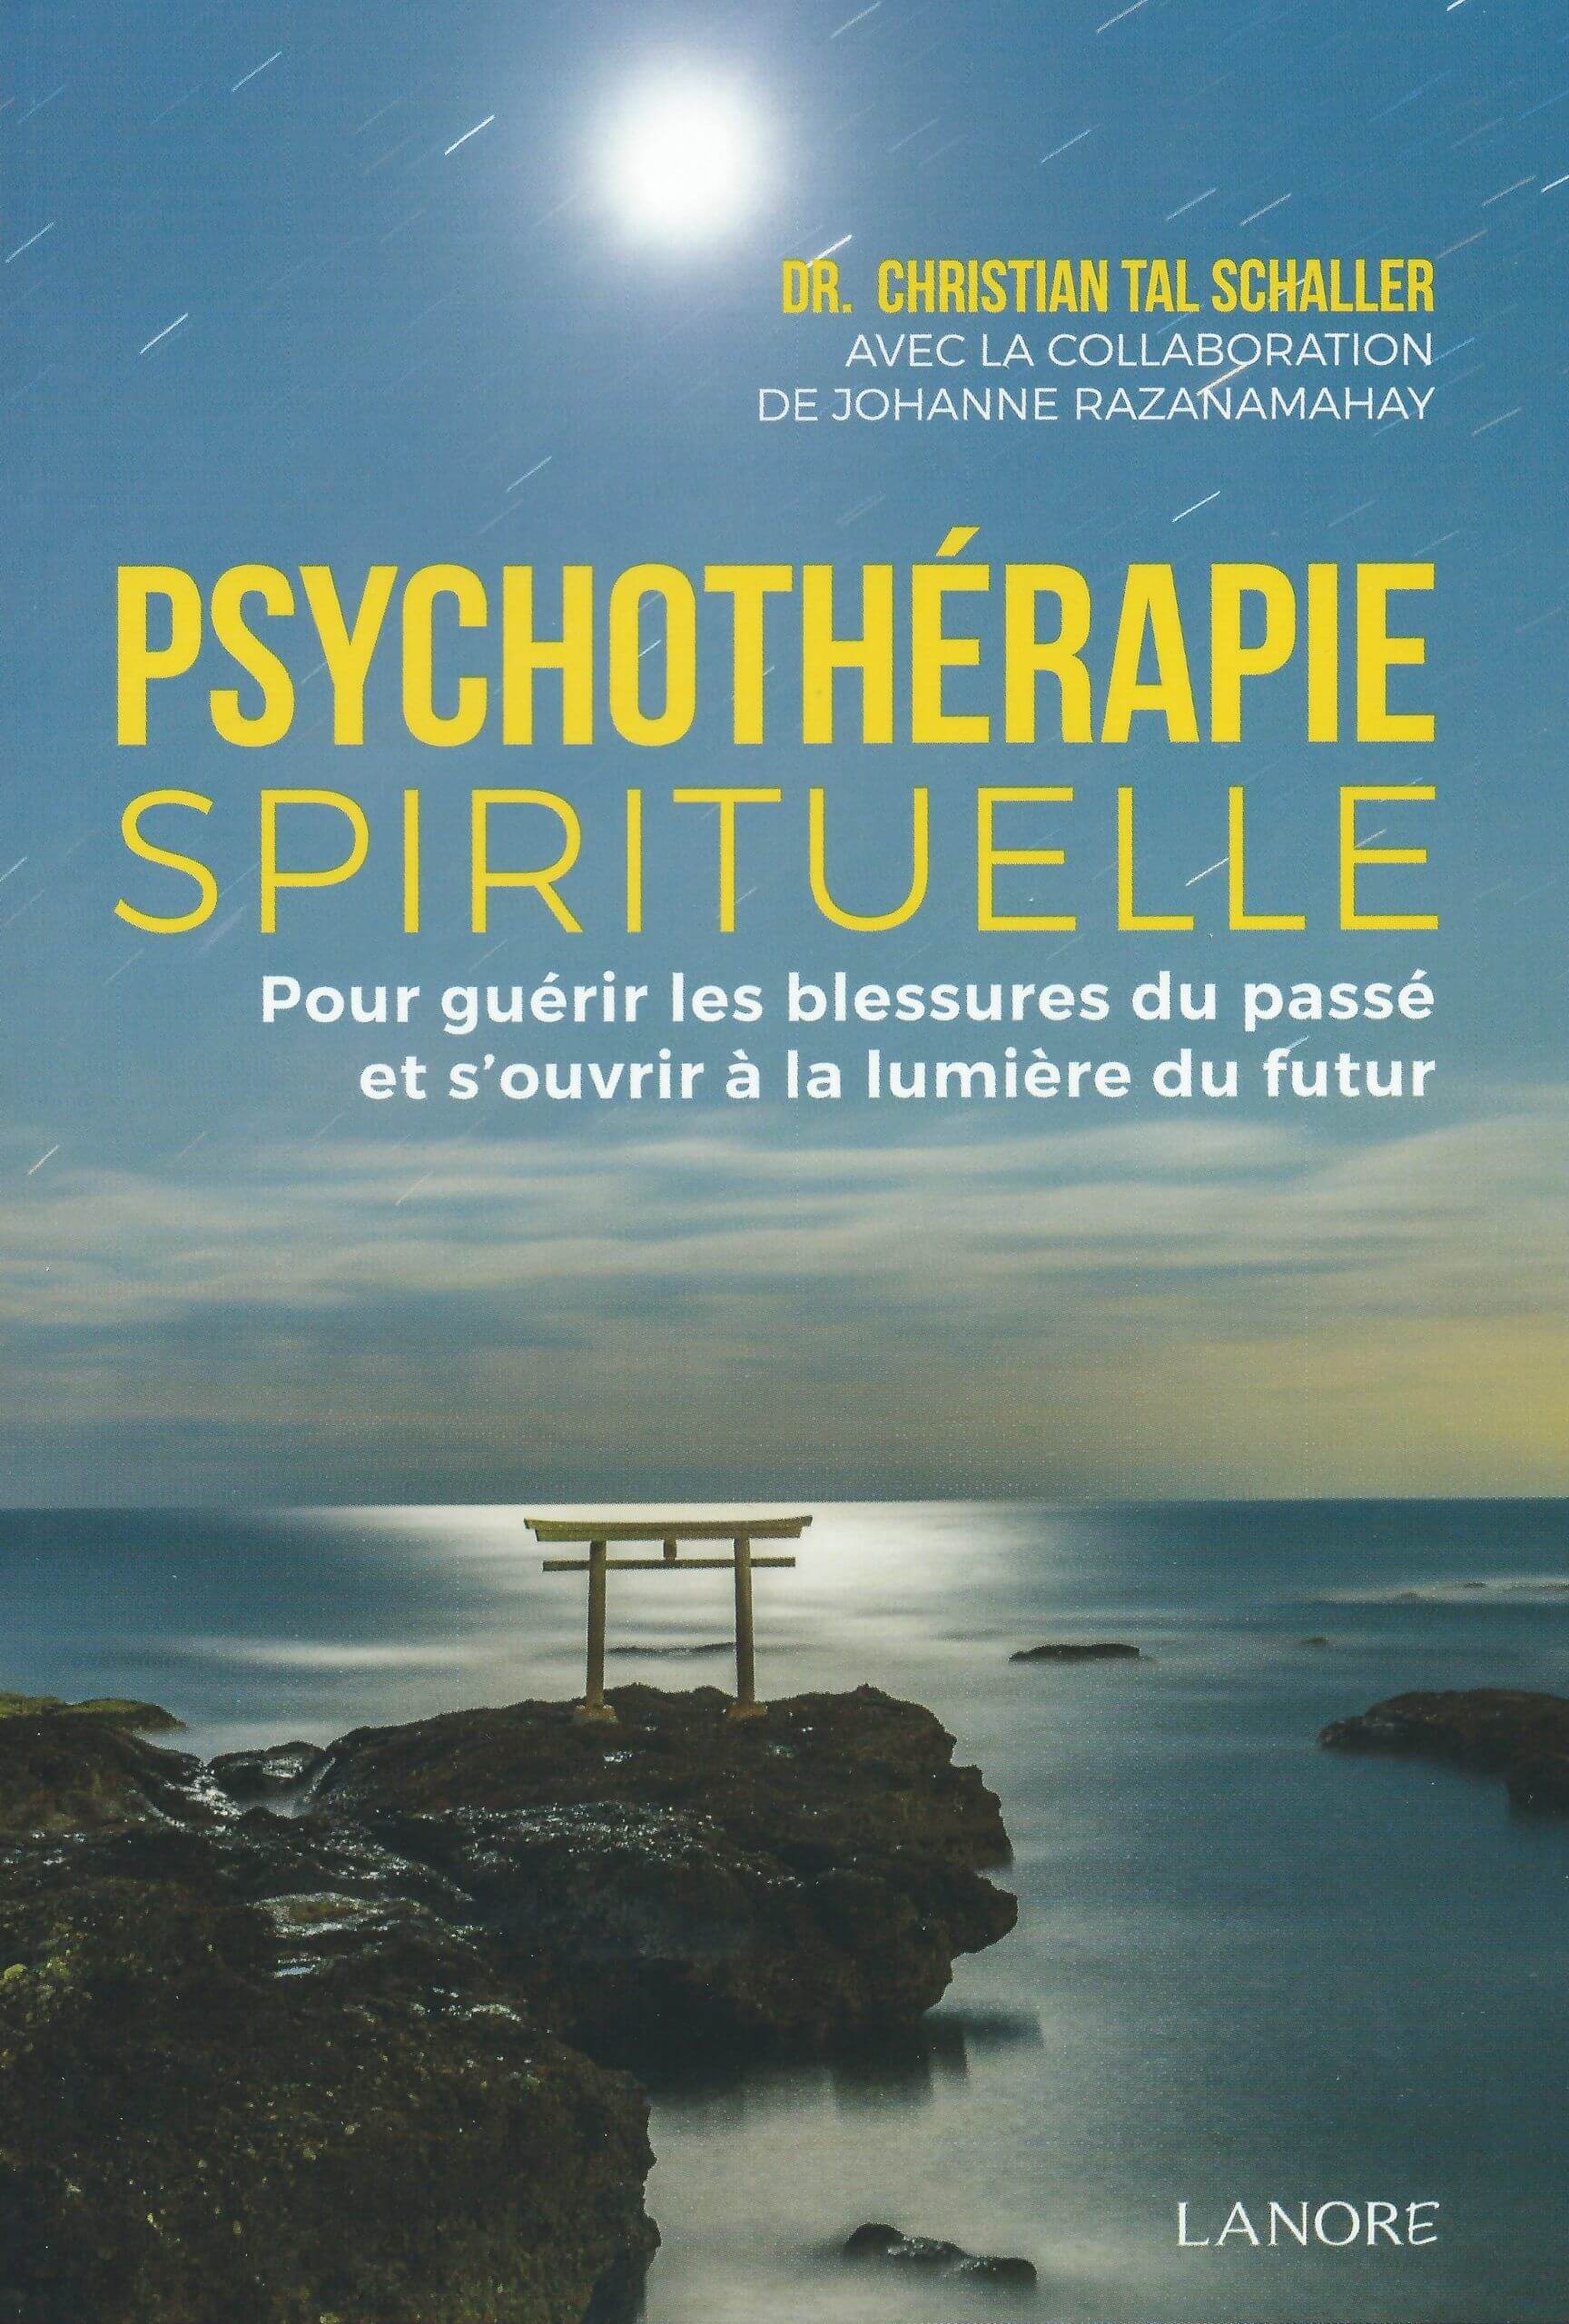 Psychotherapie spirituelle (Livre)